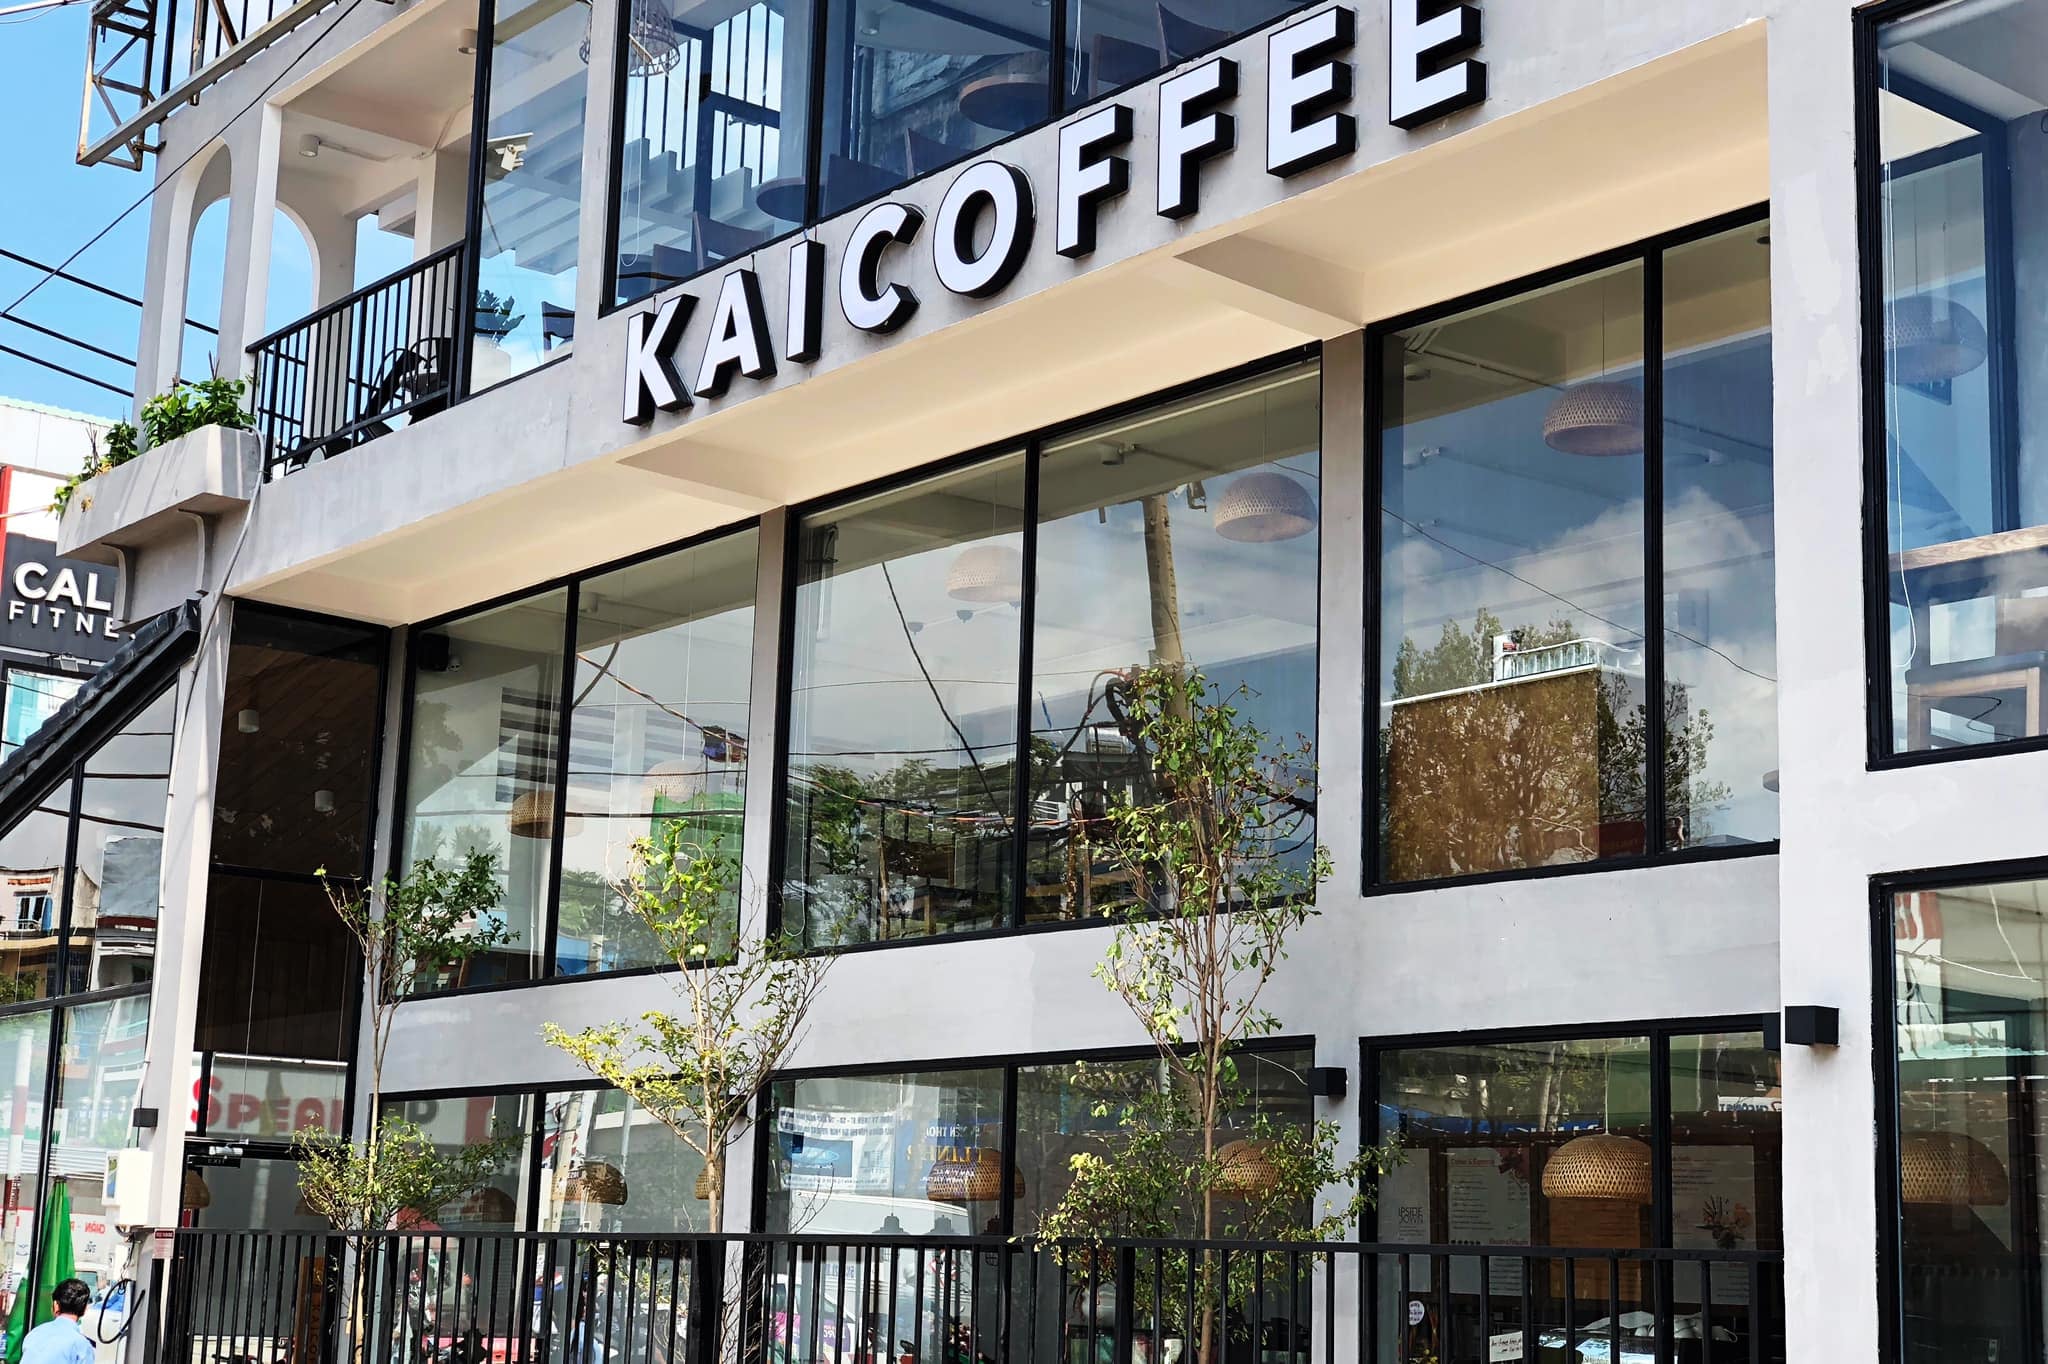 KAI Coffee | Chuỗi Cafe Ngon Không Gian Đẹp 24 giờ ở Sài Gòn